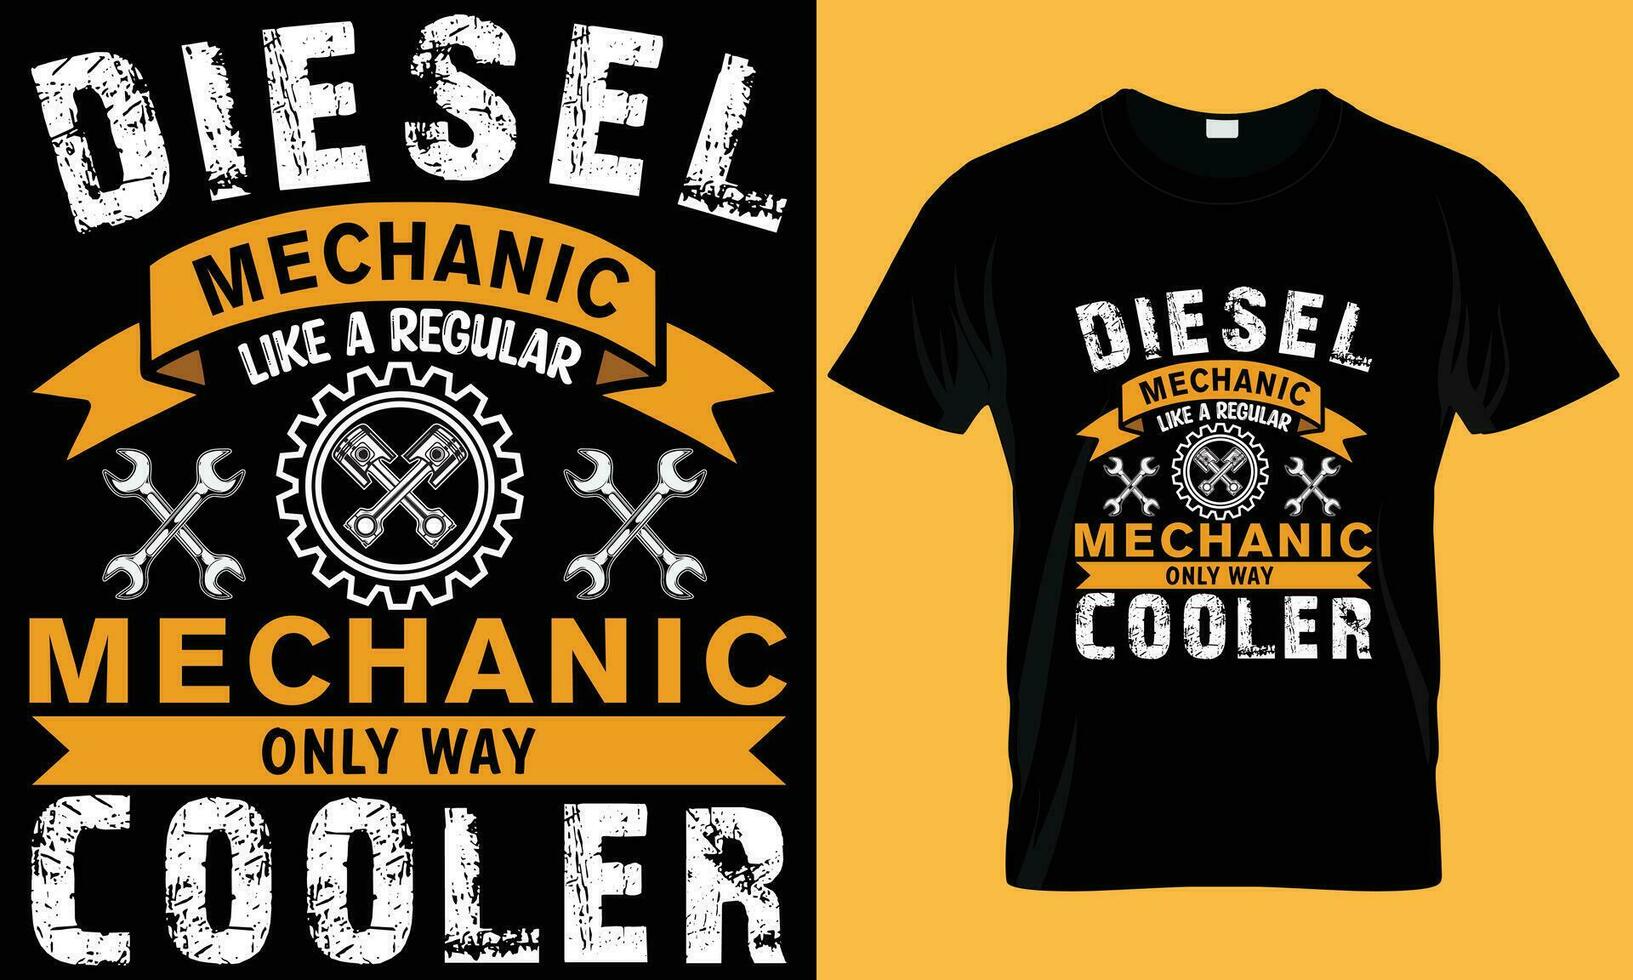 Diesel Mechanic T-shirt Design. Mechanical engineering t shirt. Mechanics t-shirt design. Diesel Mechine Like A Regular Mechine Only Way Cooler T-shirt Design. Mechanics t-shirt design vector